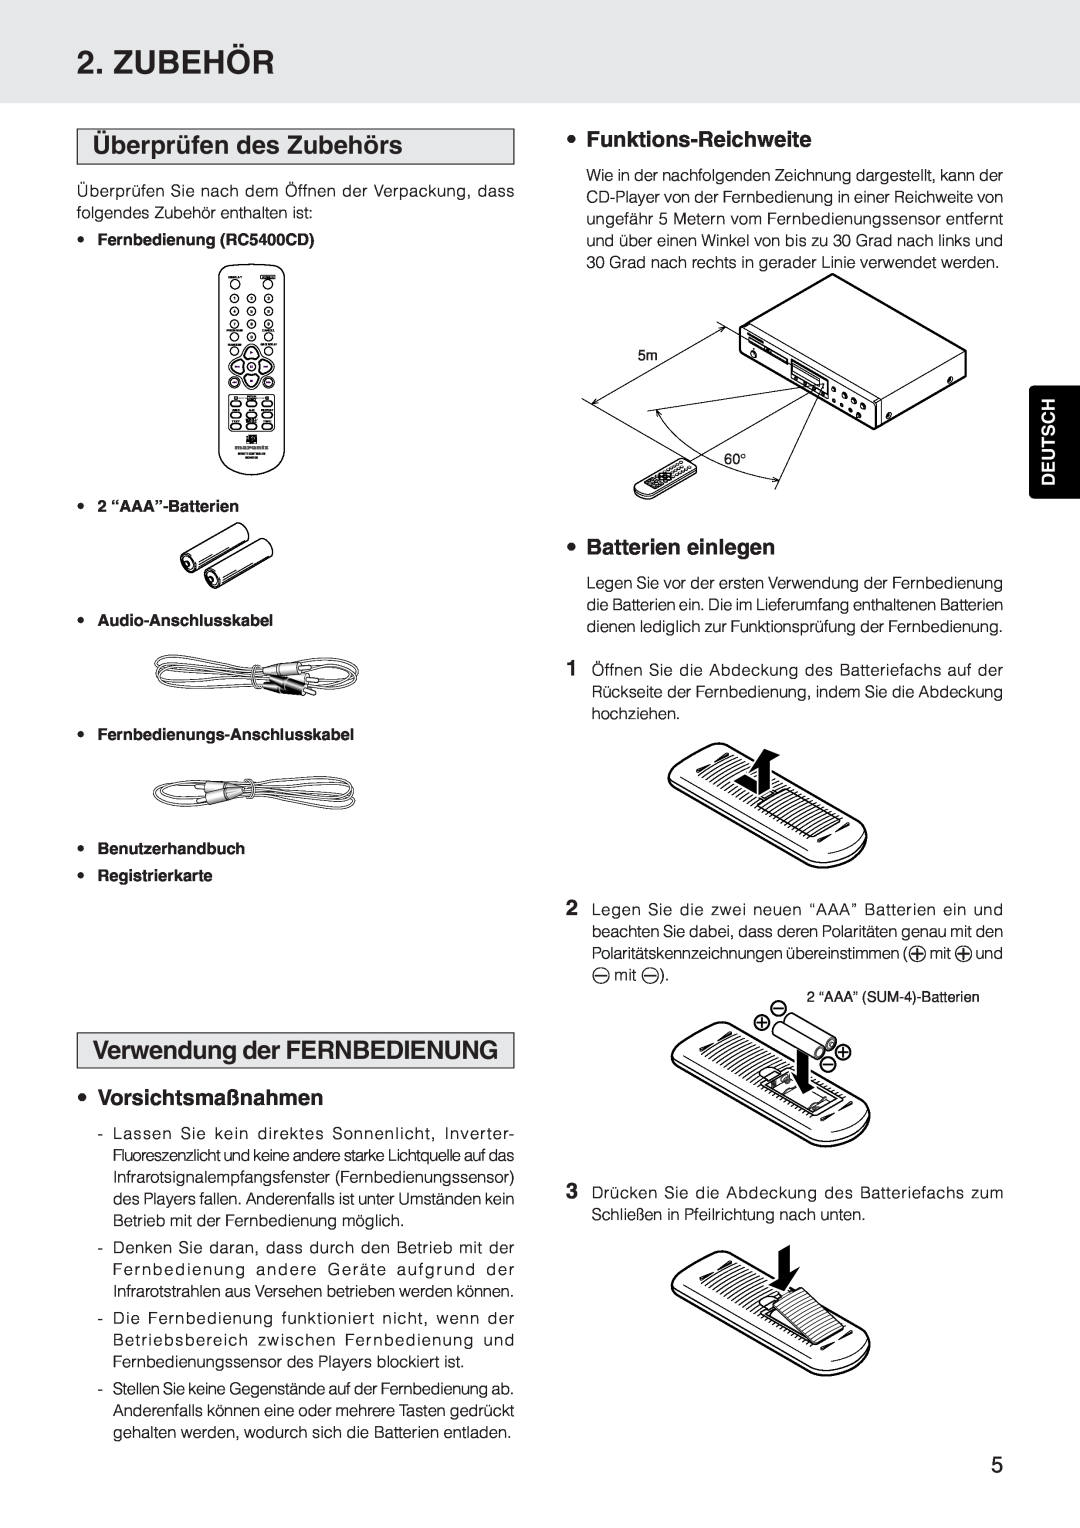 Marantz CD5400 manual Überprüfen des Zubehörs, Verwendung der FERNBEDIENUNG, Funktions-Reichweite, Batterien einlegen 